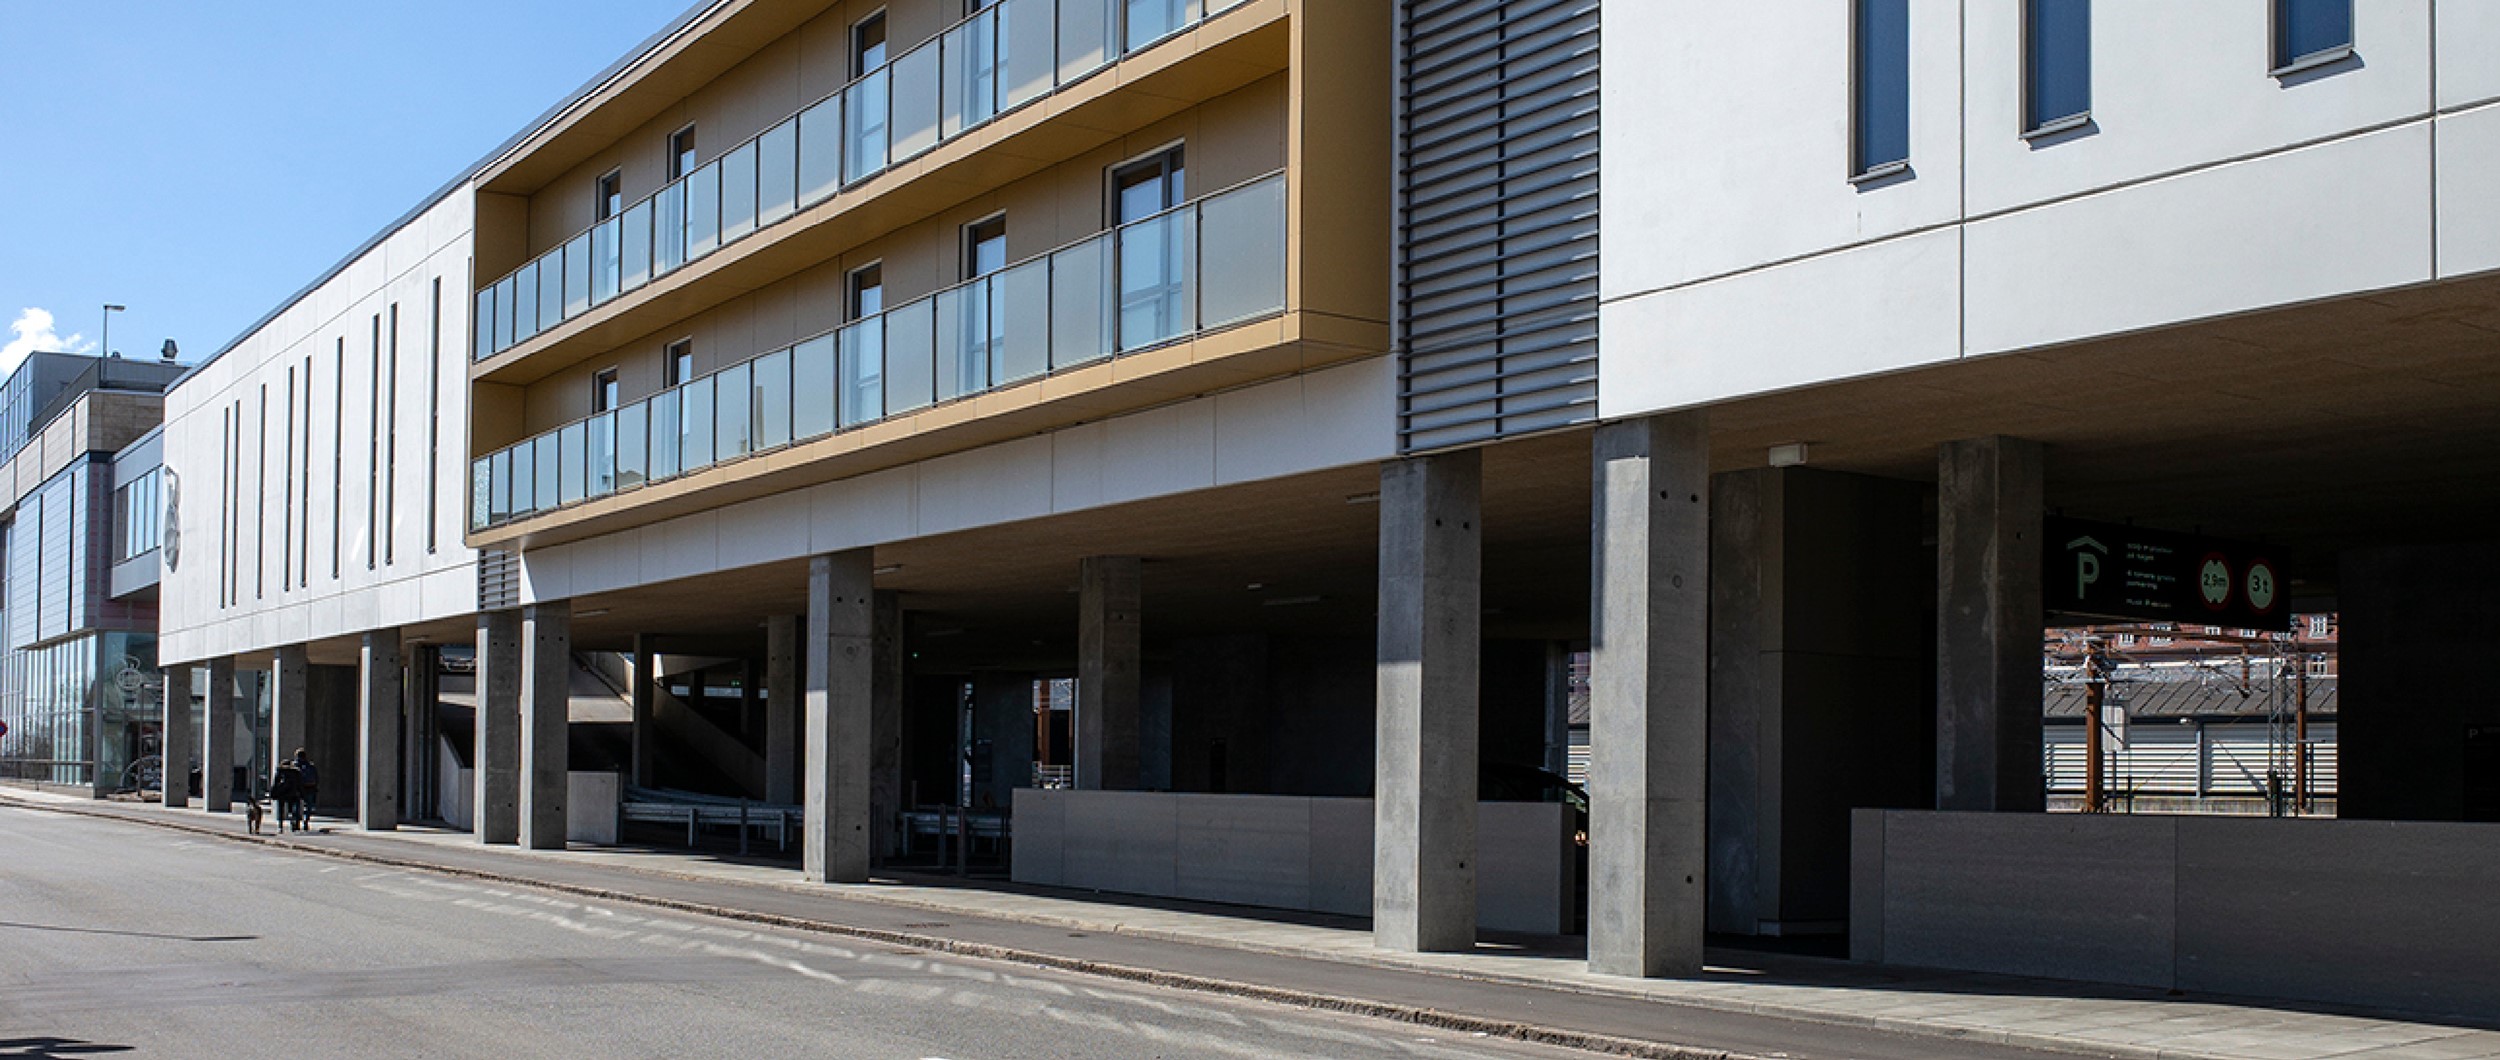 Biografcenteret, er udført som en ny bygning på søjler hen over eksisterende parkeringspladser.